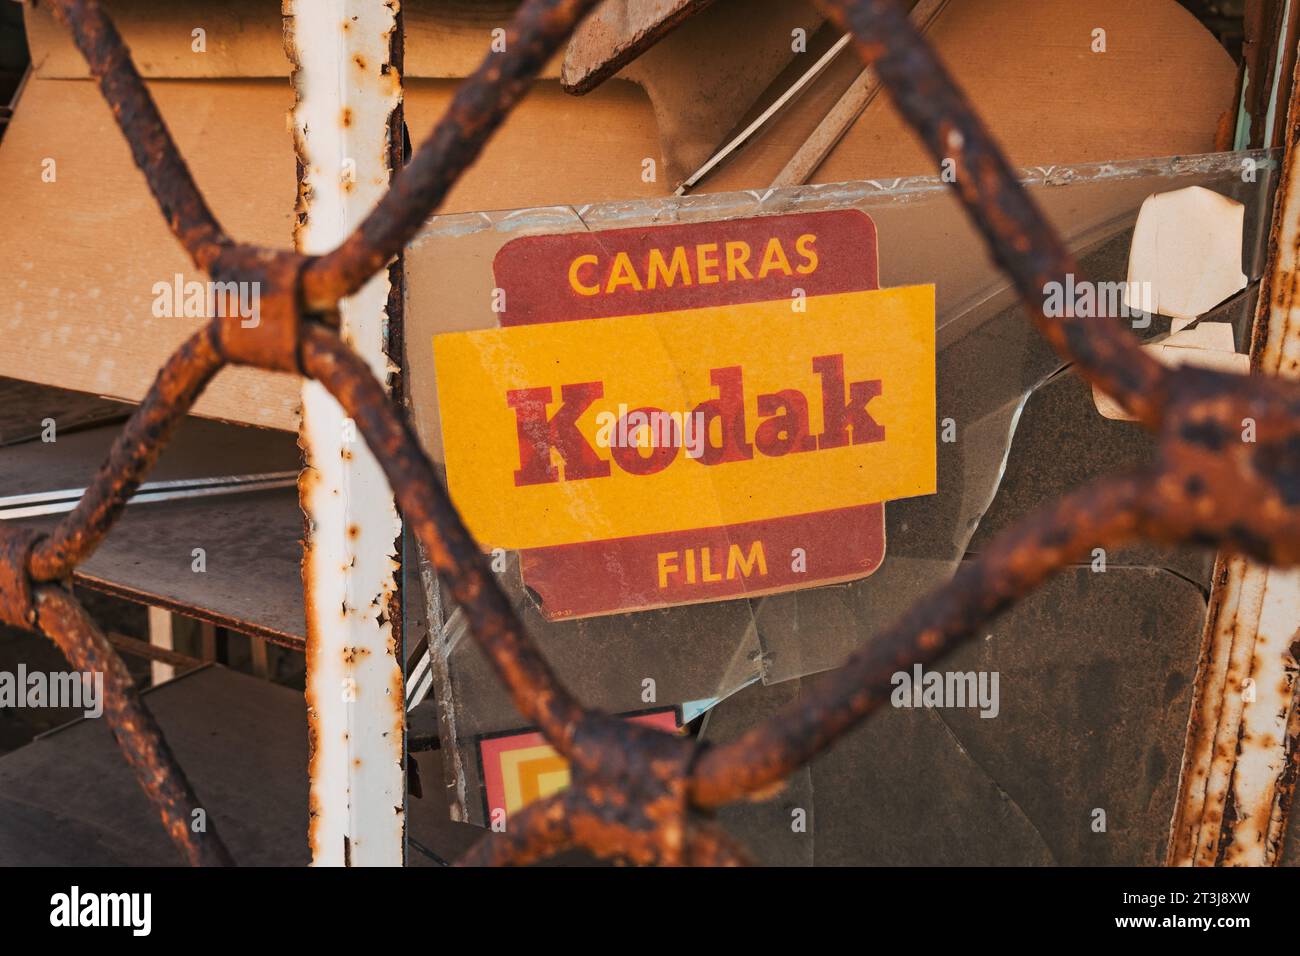 Un cartello Kodak su un vecchio negozio di macchine fotografiche a Varosha, Cipro del Nord. La città fu abbandonata nel 1974 dopo essere stata invasa dalle truppe turche. Foto Stock